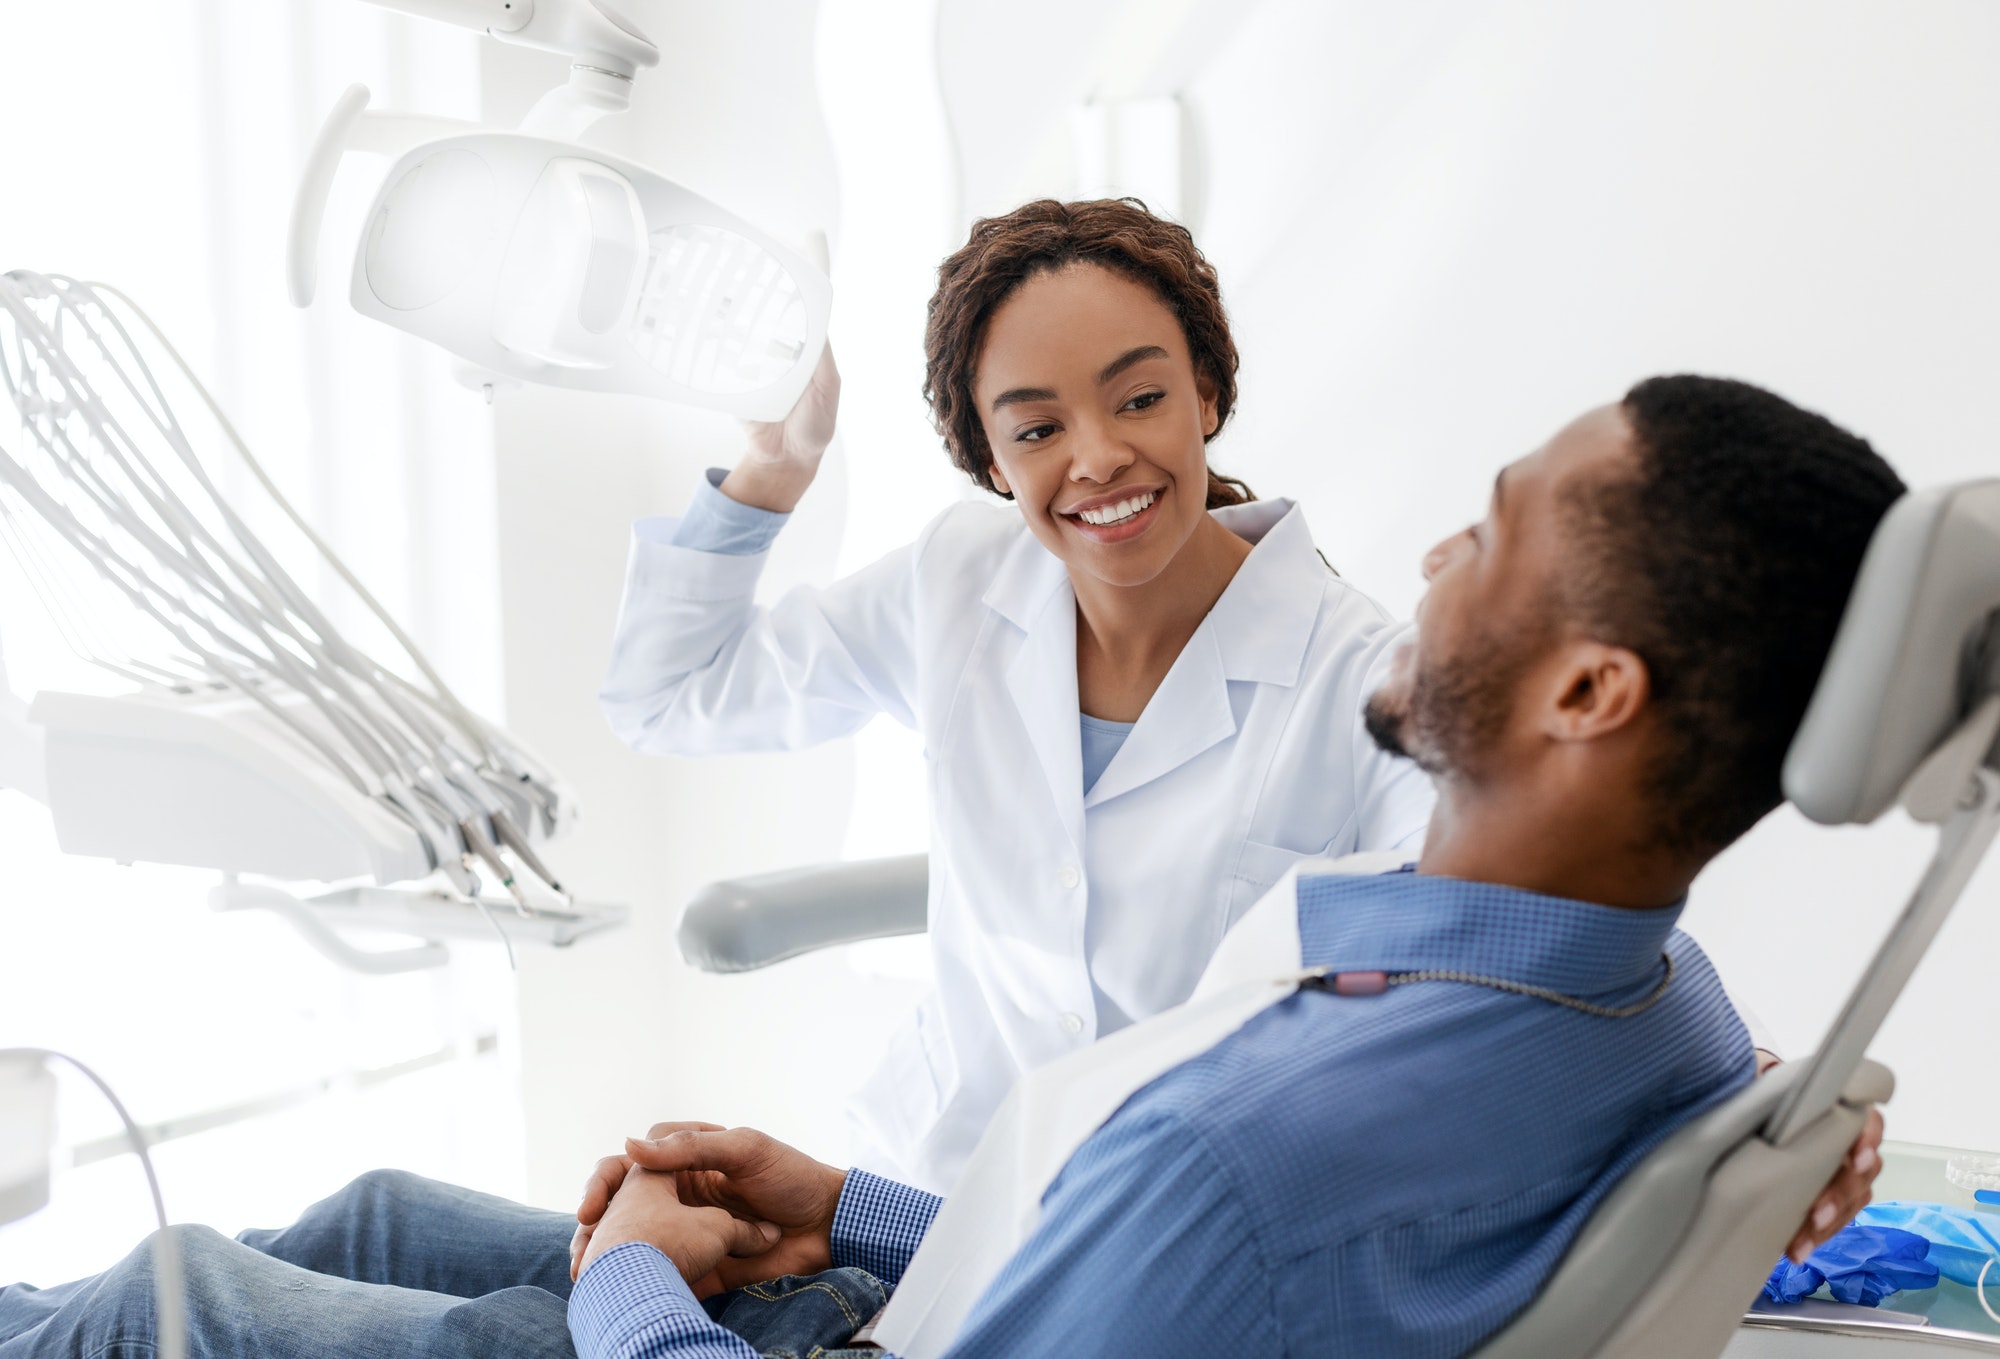 Qu'est-ce qu'il faut savoir sur la couronne dentaire ? - Centre Dentaire  Dre Nathalie Kadoch